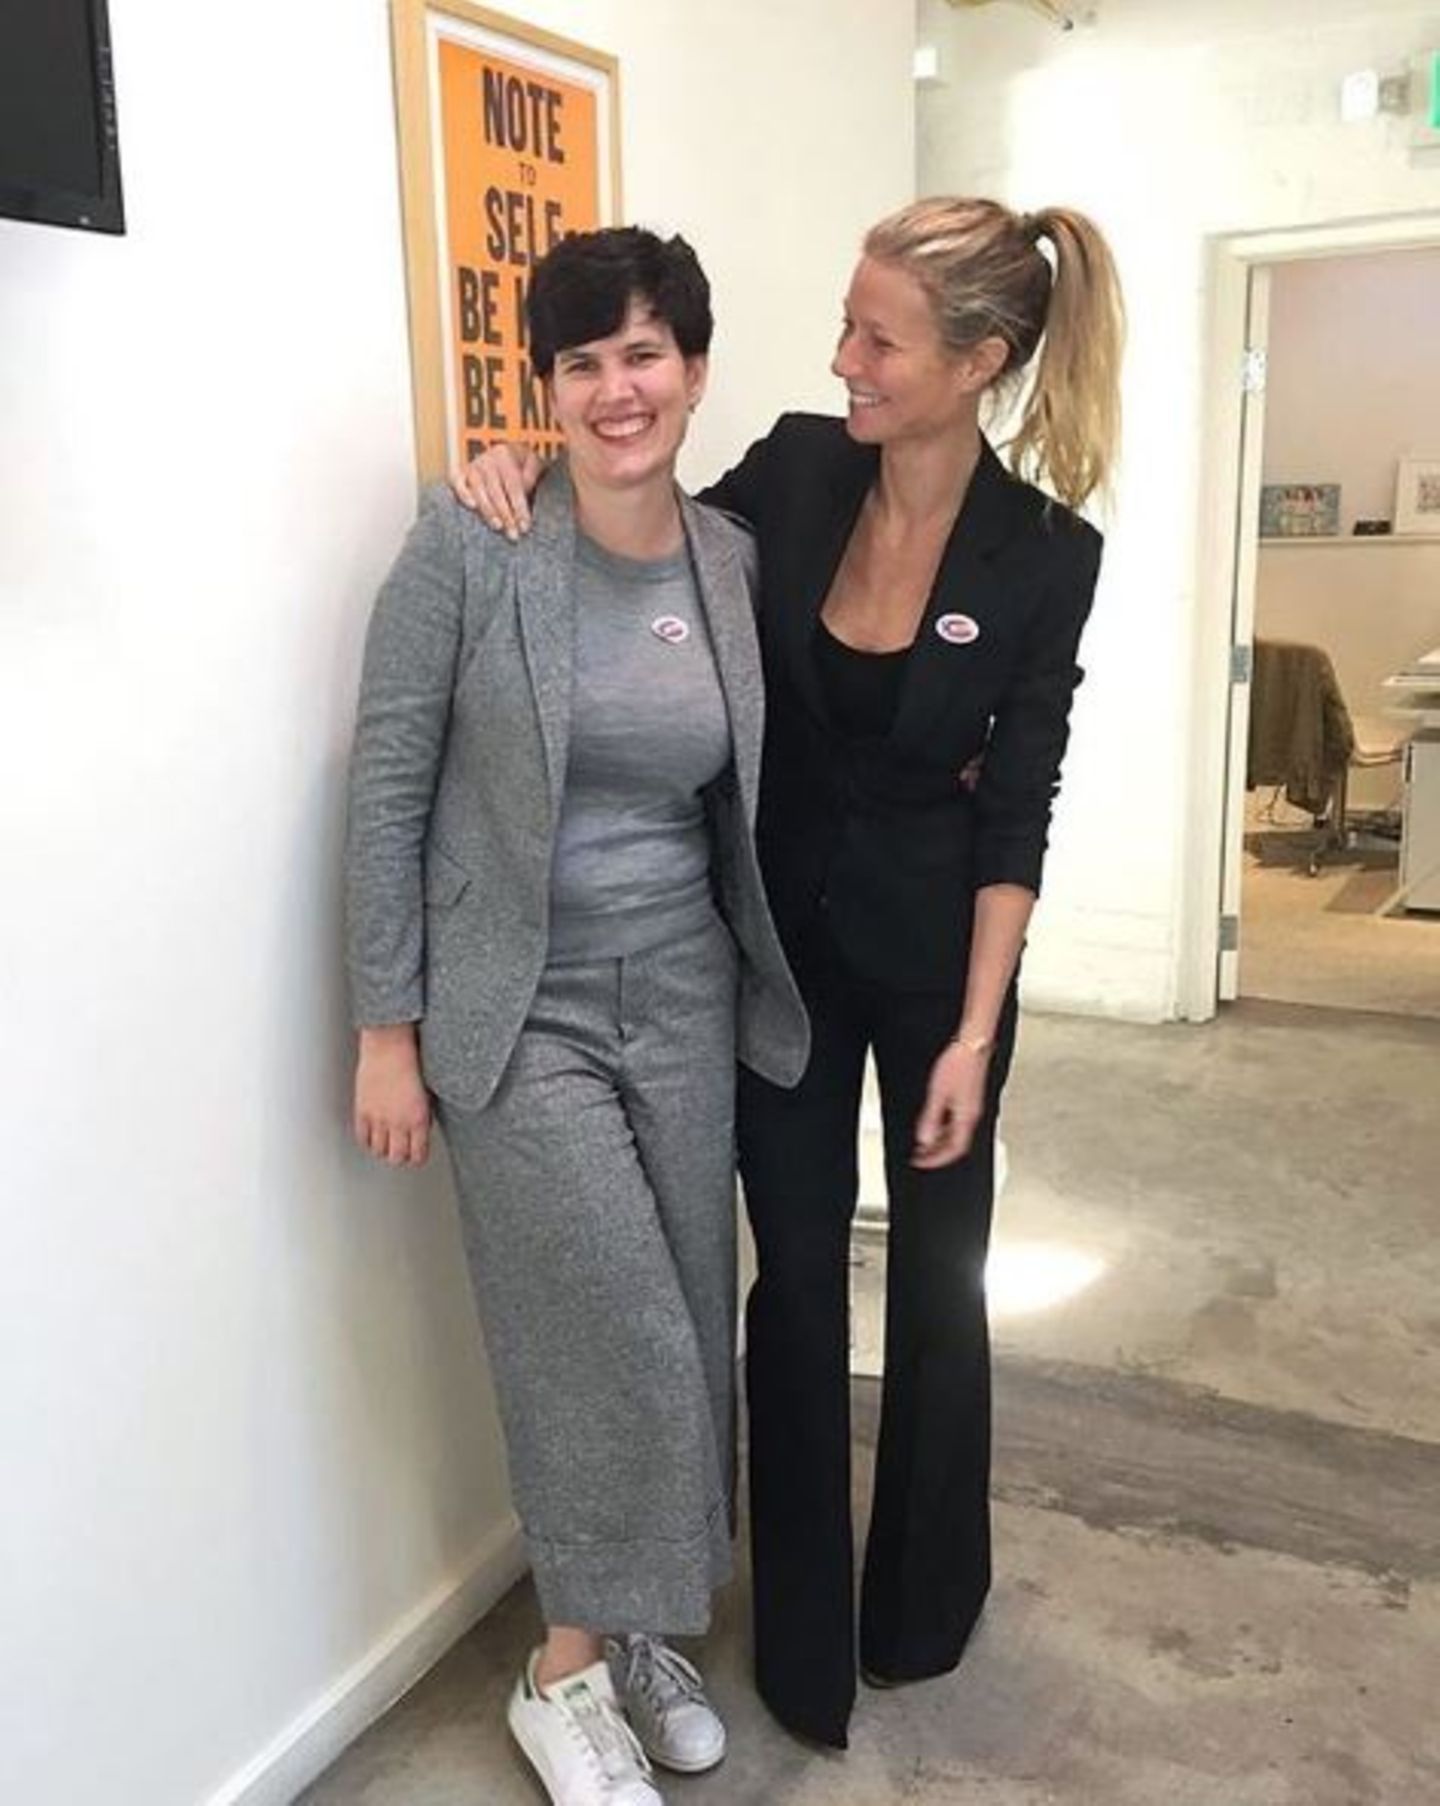 Gwyneth Paltrow und eine Mitarbeiterin ihrer Lifestyle-Webseite "Goop" tragen zur Wahl einen Anzug.